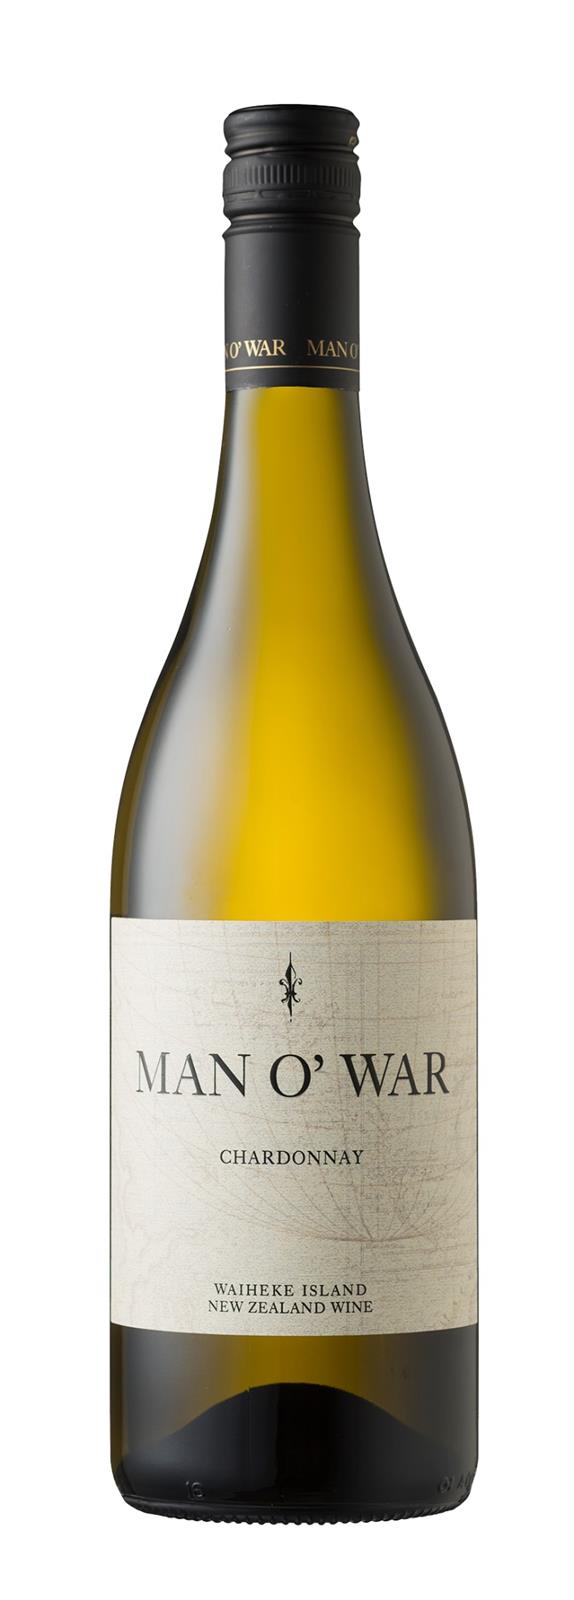 Man O' War Estate Waiheke Island Chardonnay 2018